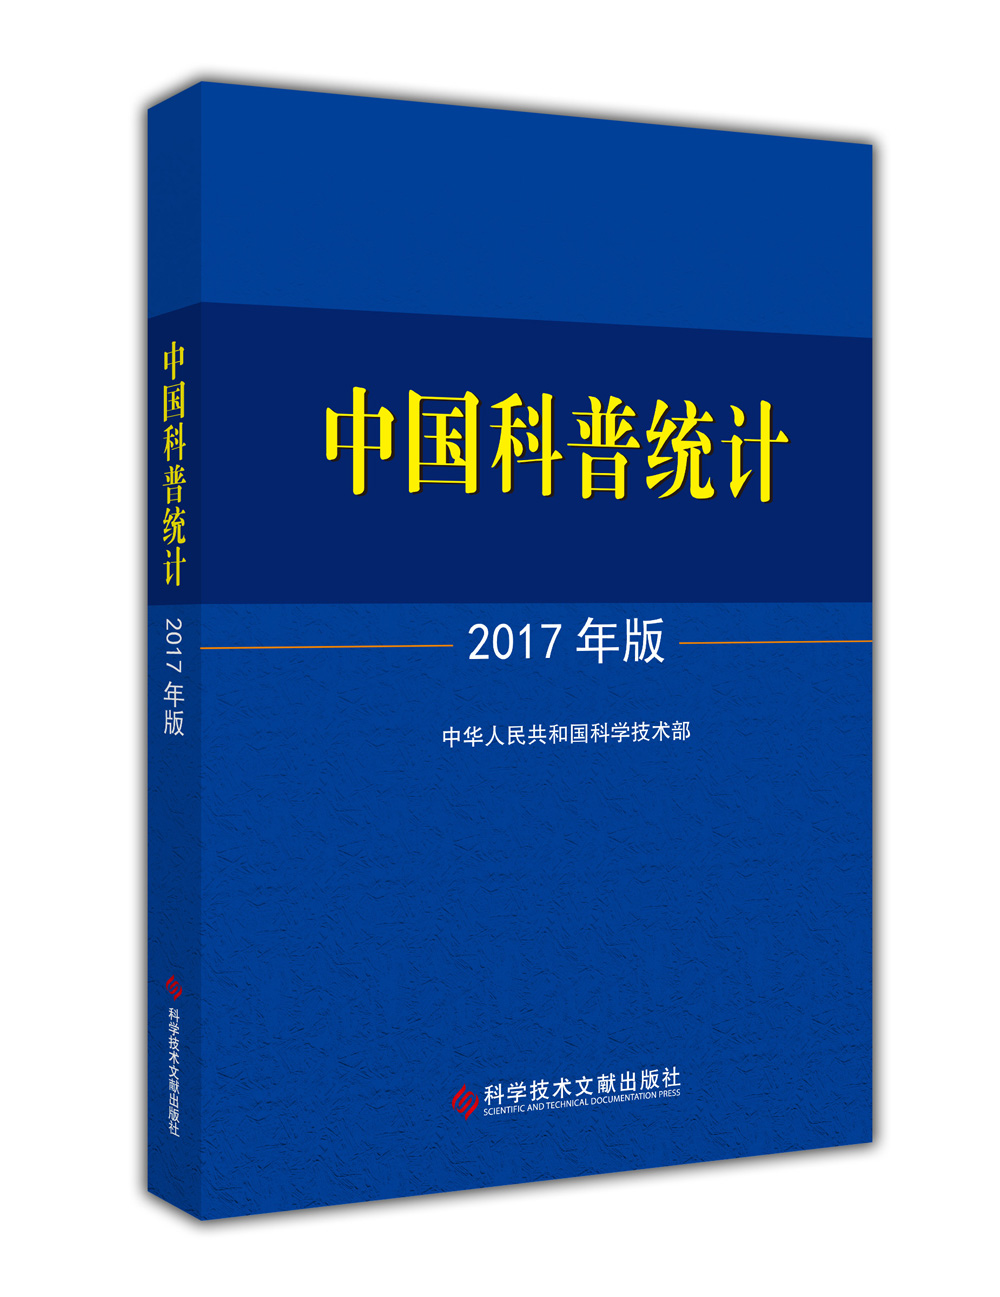 中国科普统计2017年版 azw3格式下载